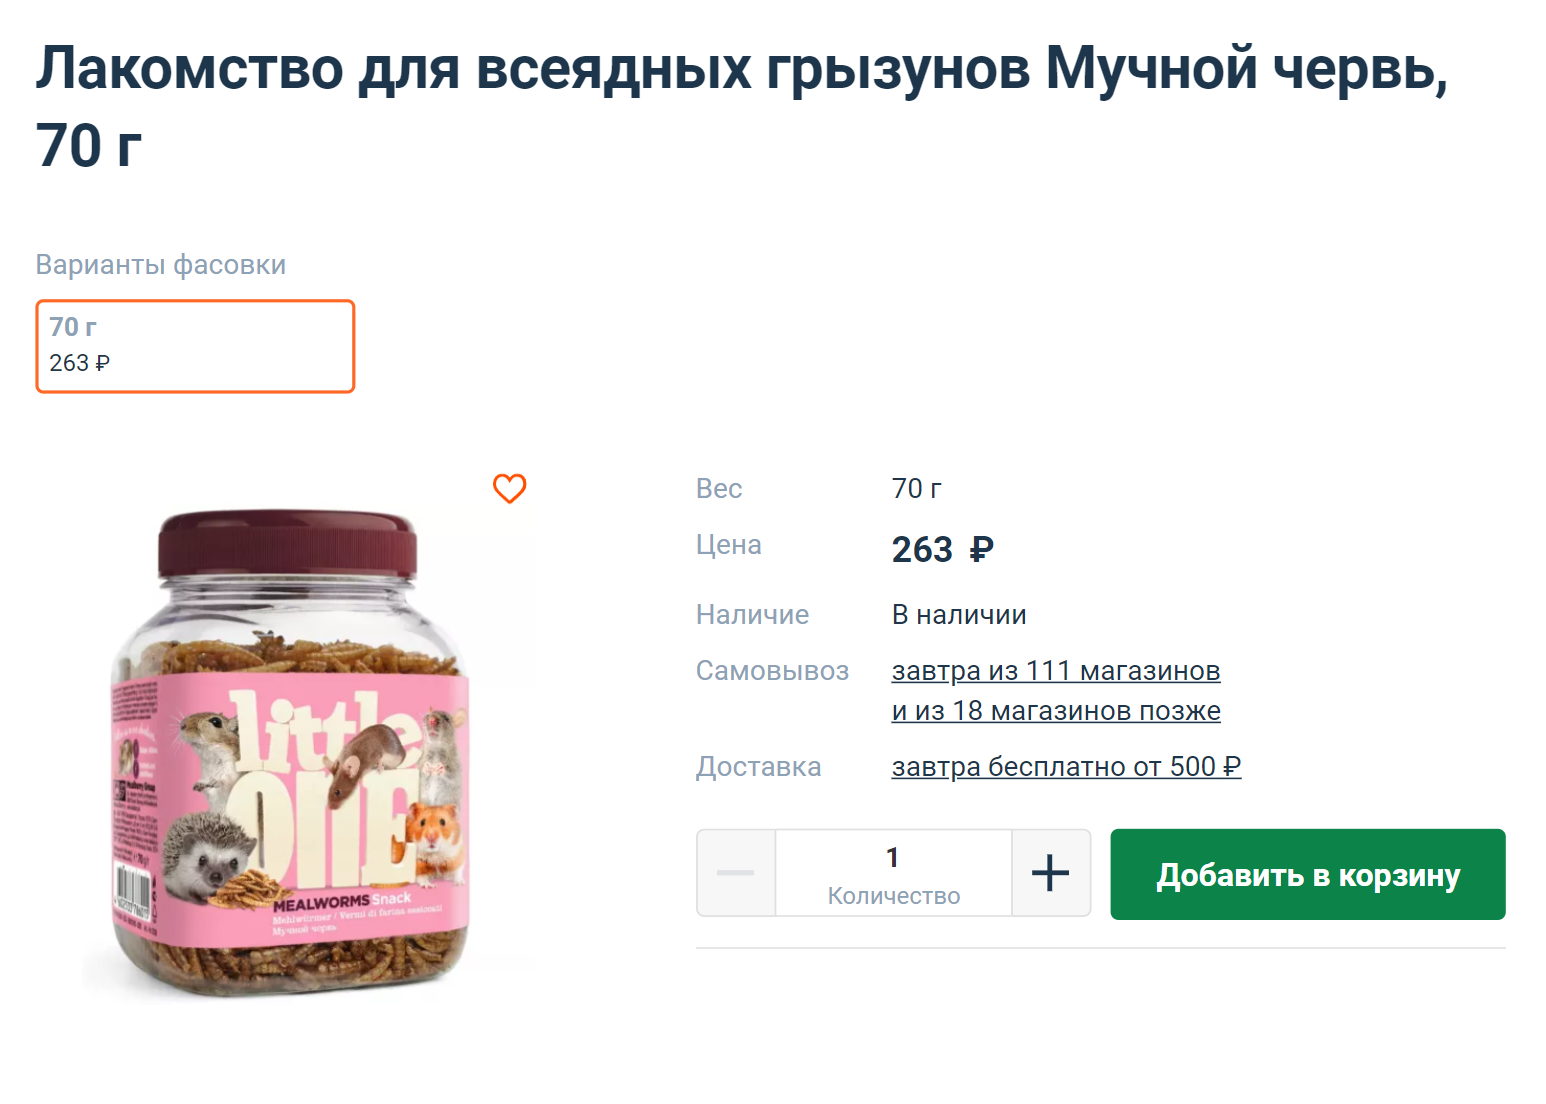 Такое количество червей наши крысы съедают примерно за три месяца. Получается, за год мы покупаем четыре банки и тратим на них чуть больше 1000 ₽. Источник: 4lapy.ru